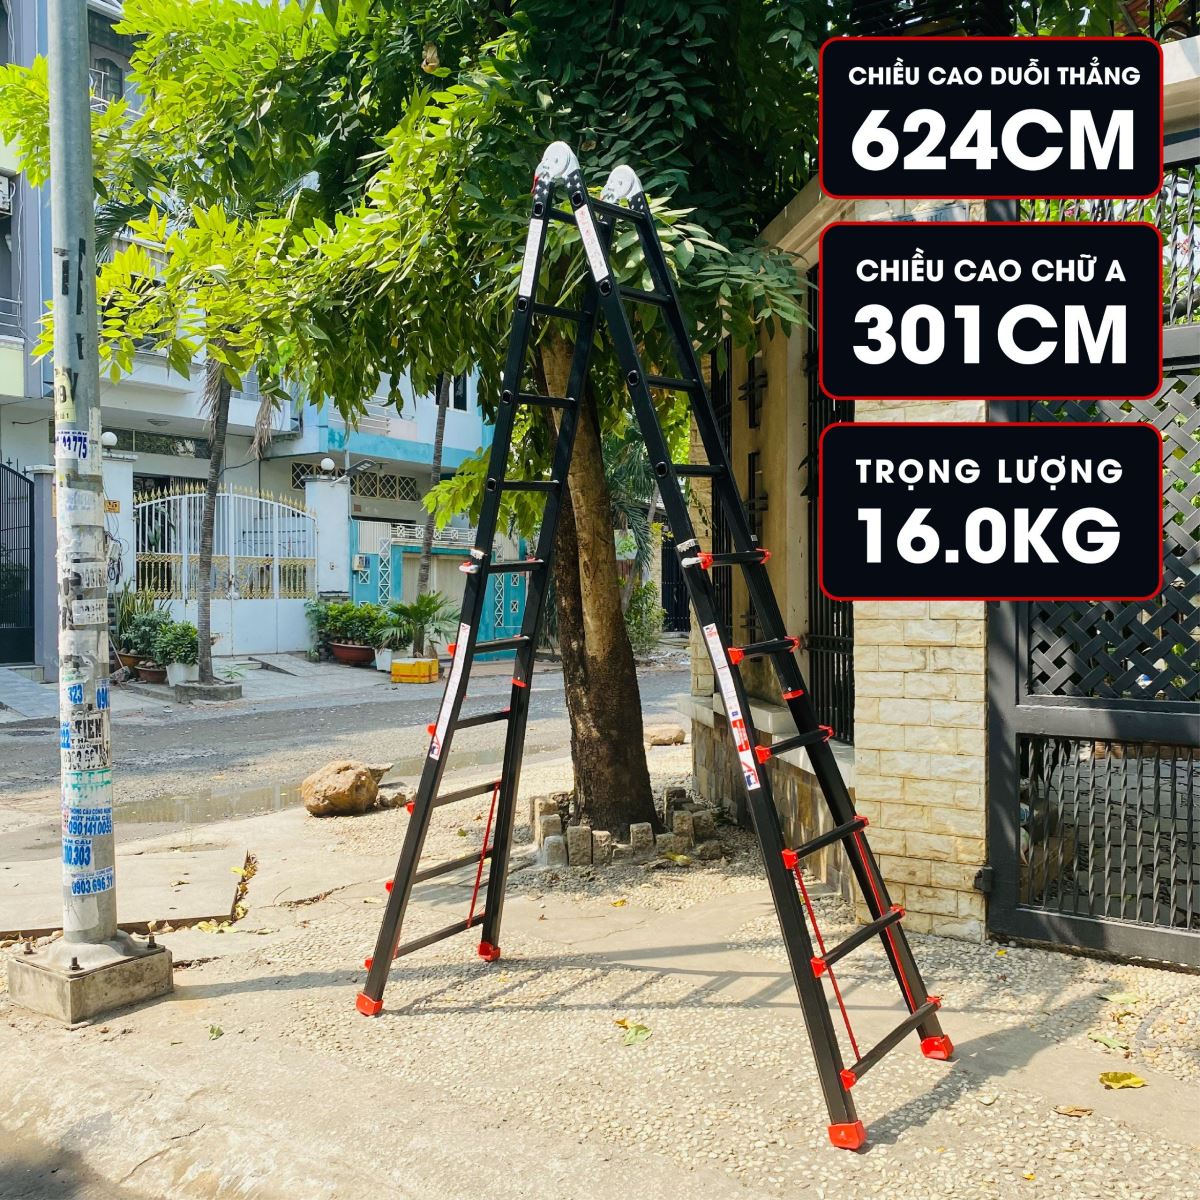 Thang Nhôm Gấp Đa Năng DIY MTL-46B chiều cao sử dụng tối đa 3.01M chiều cao chữ I 6.24M